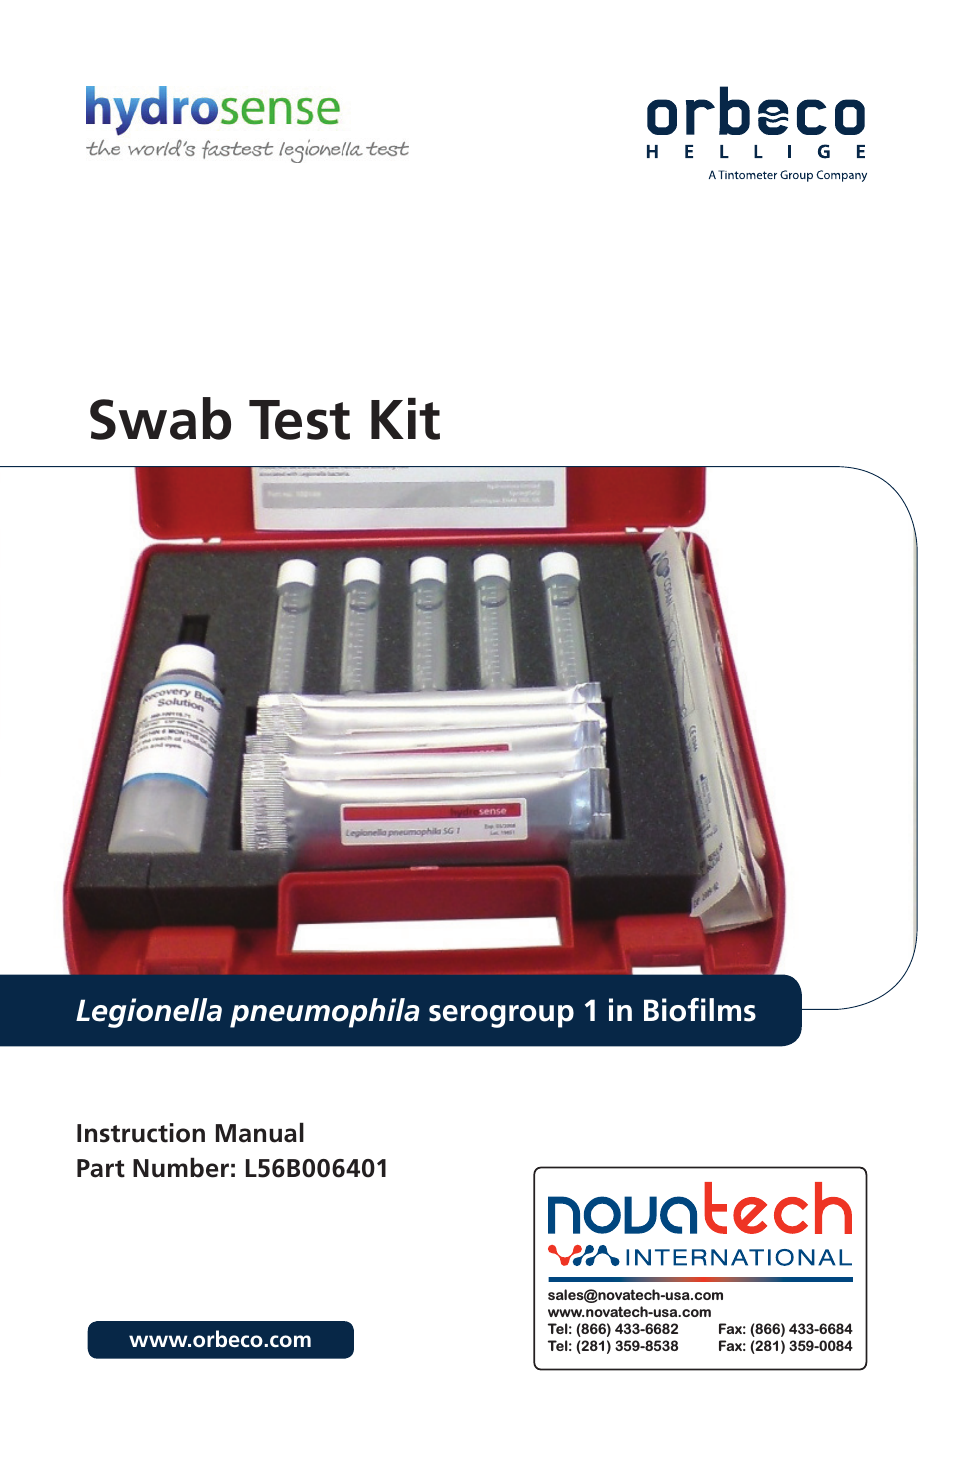 Orbeco-Hellige Legionella Swab Test Kit